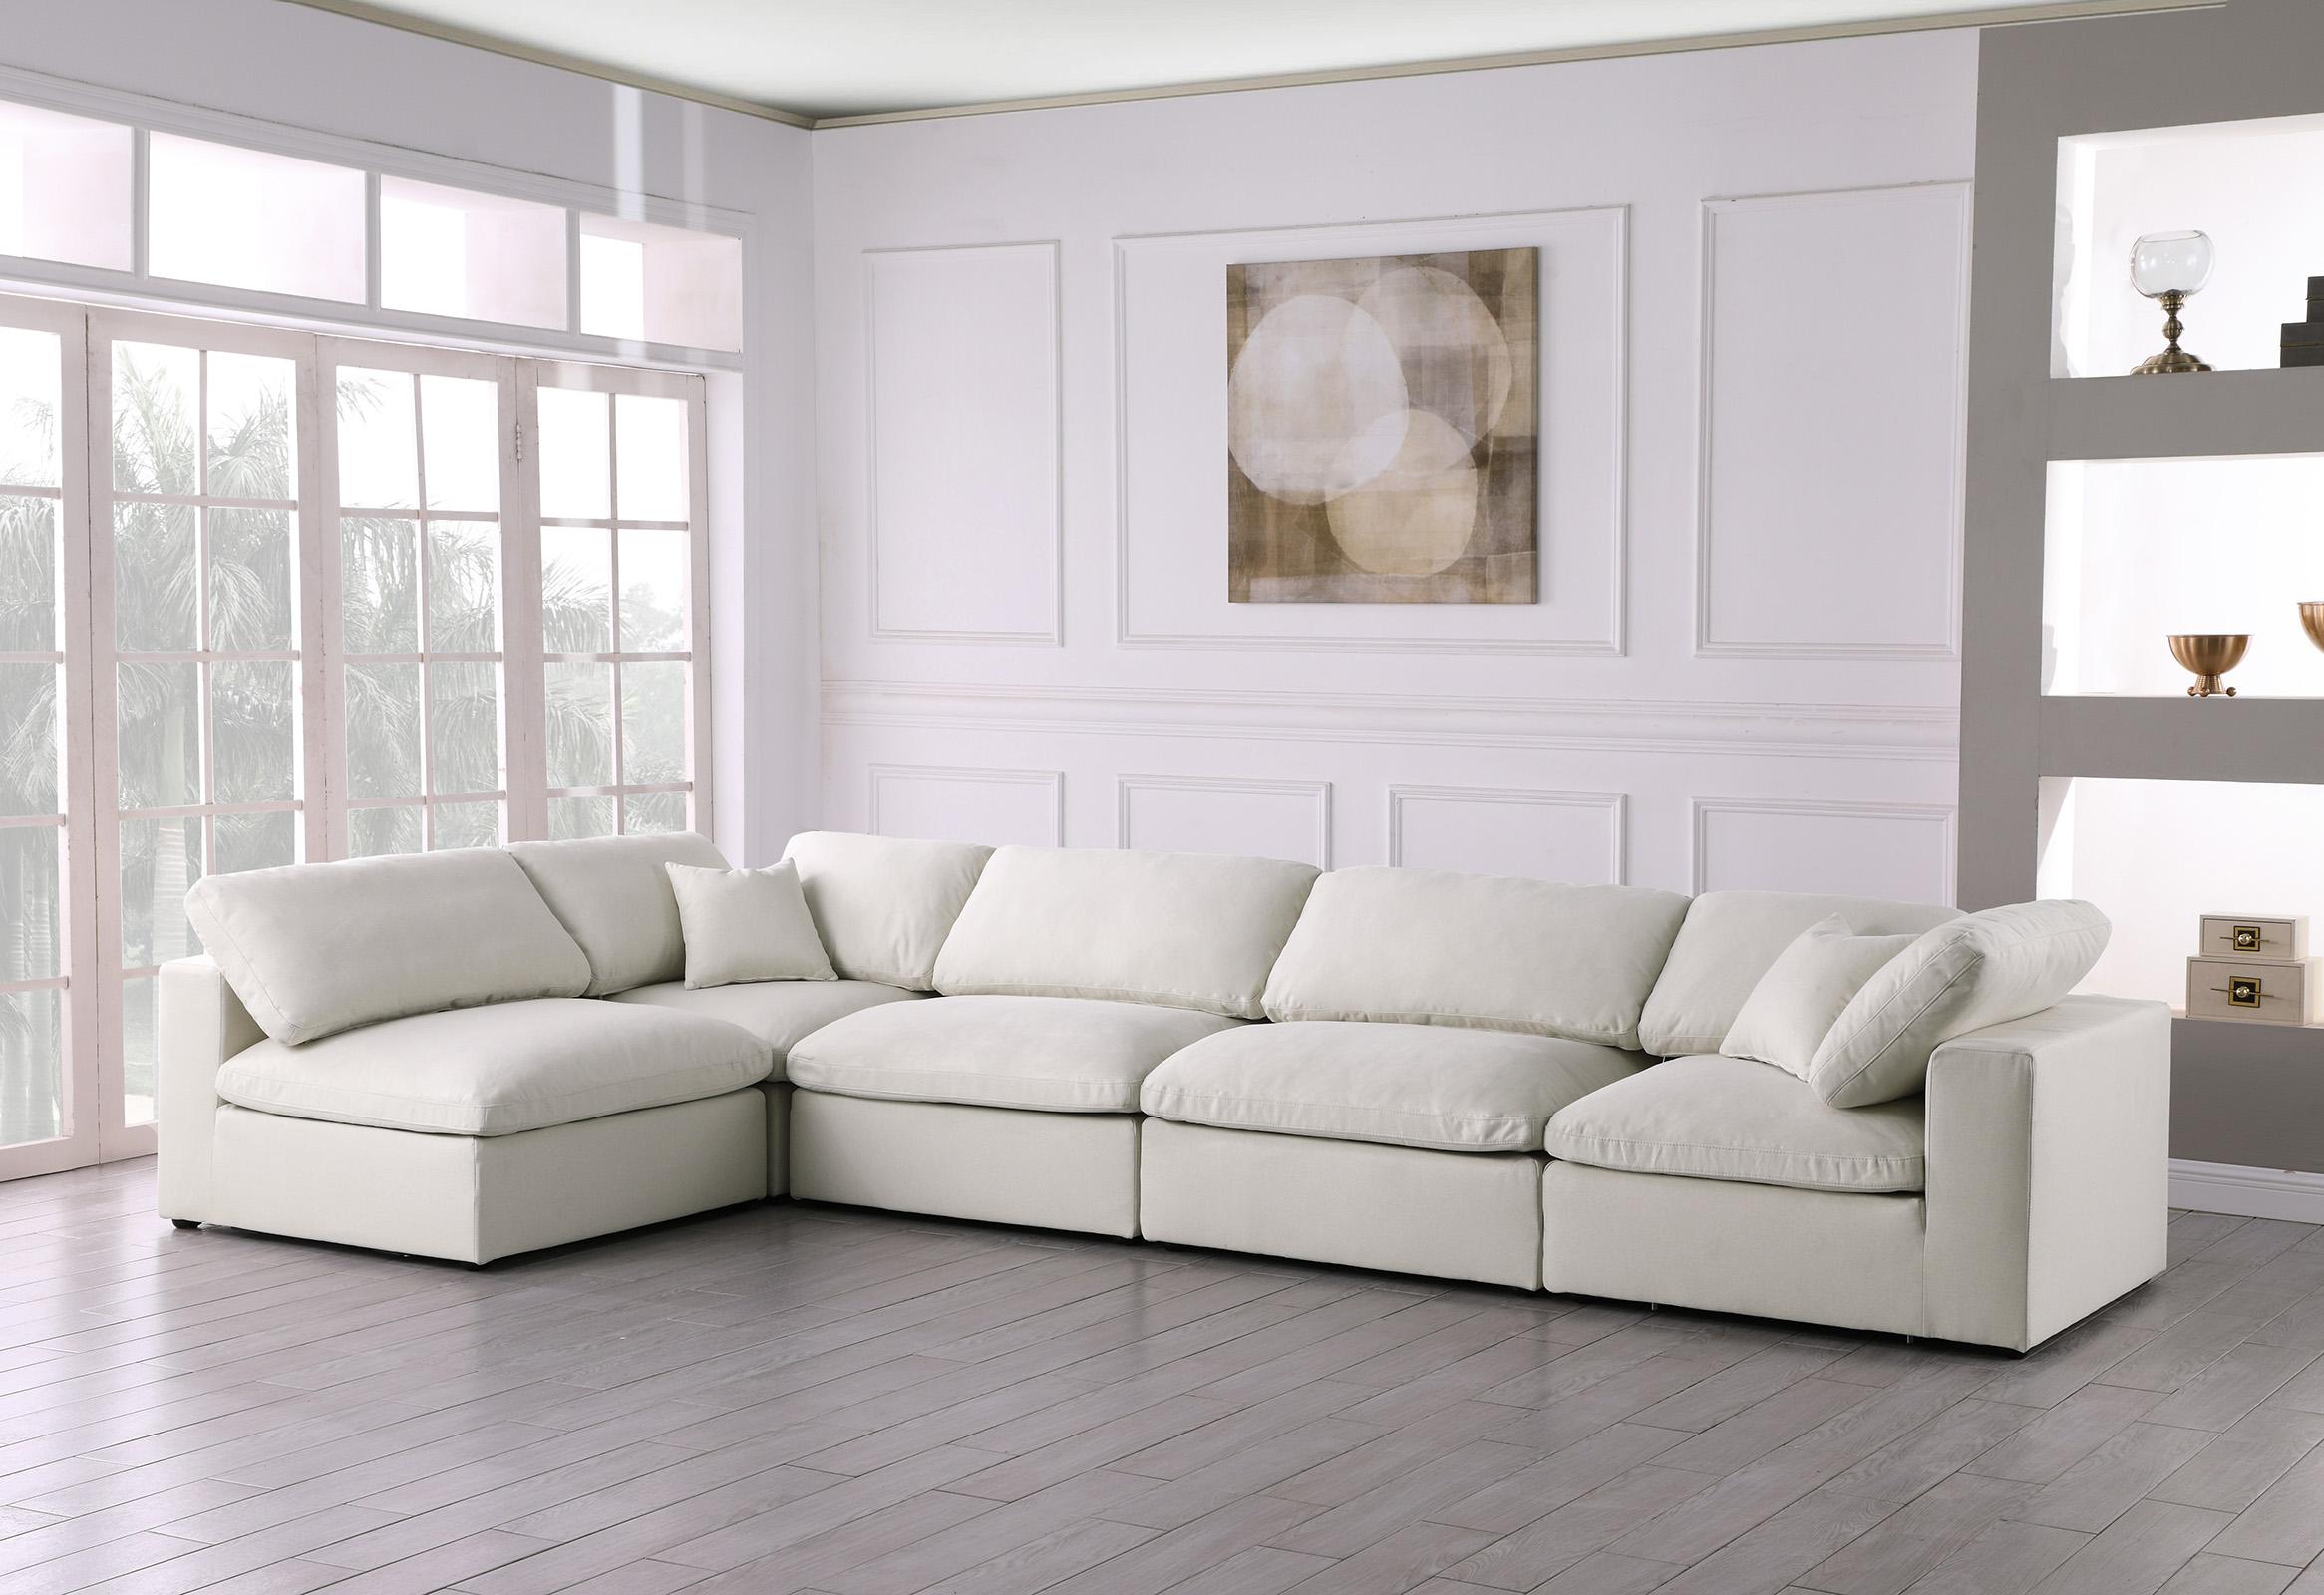 

    
Meridian Furniture SERENE 601Cream-Sec5D Modular Sectional Cream 601Cream-Sec5D
